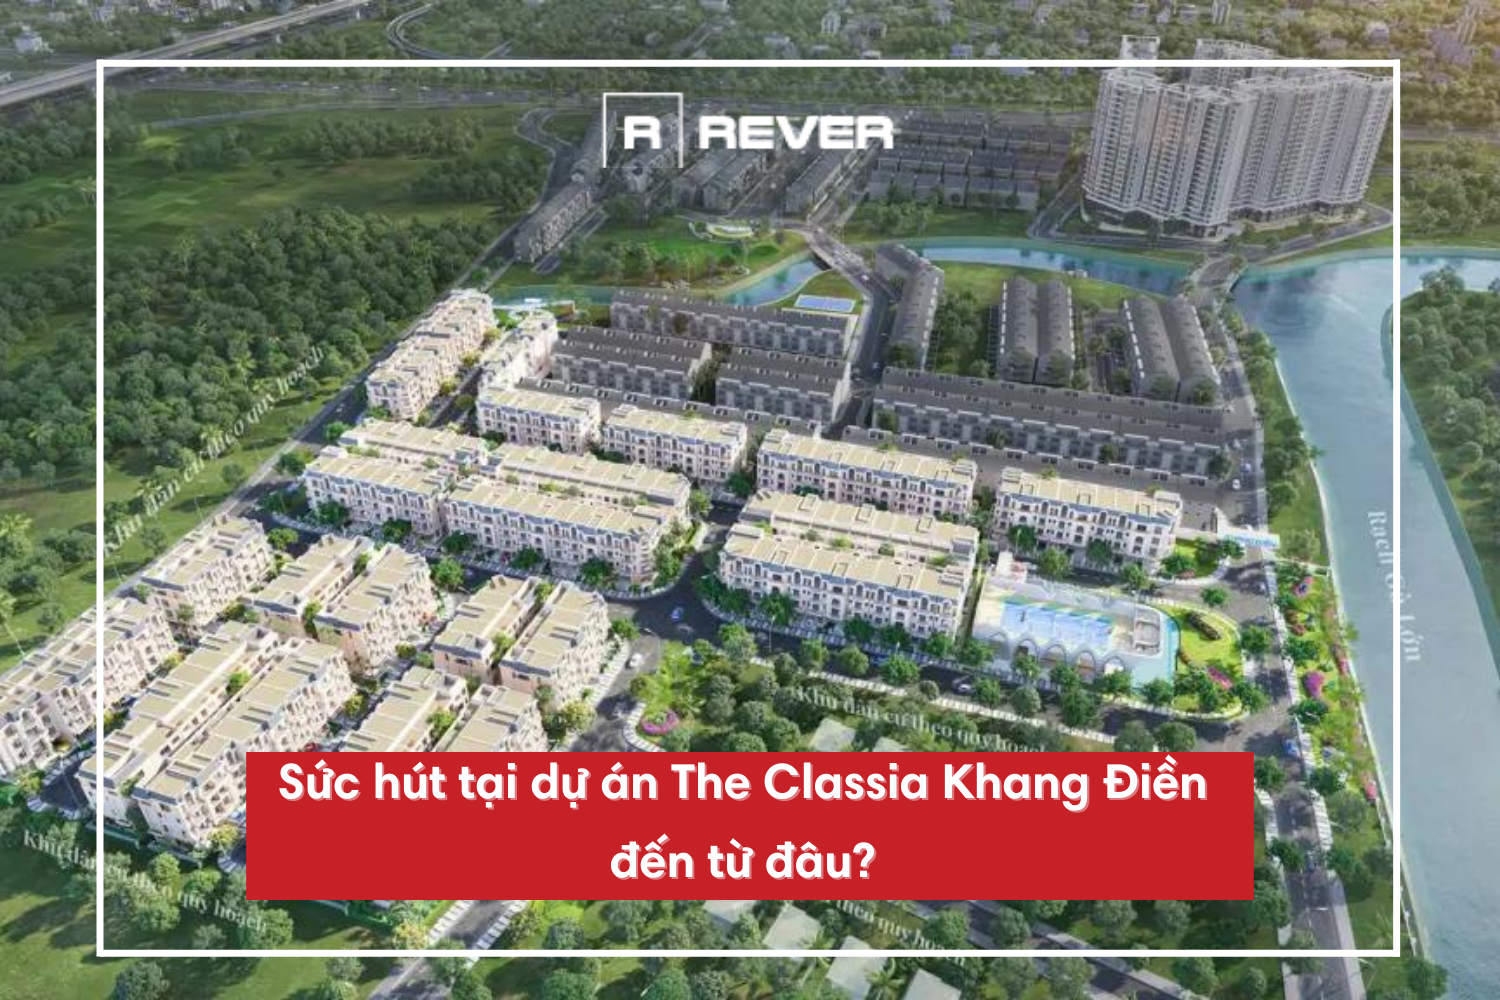 Sức hút tại dự án The Classia Khang Điền đến từ đâu?